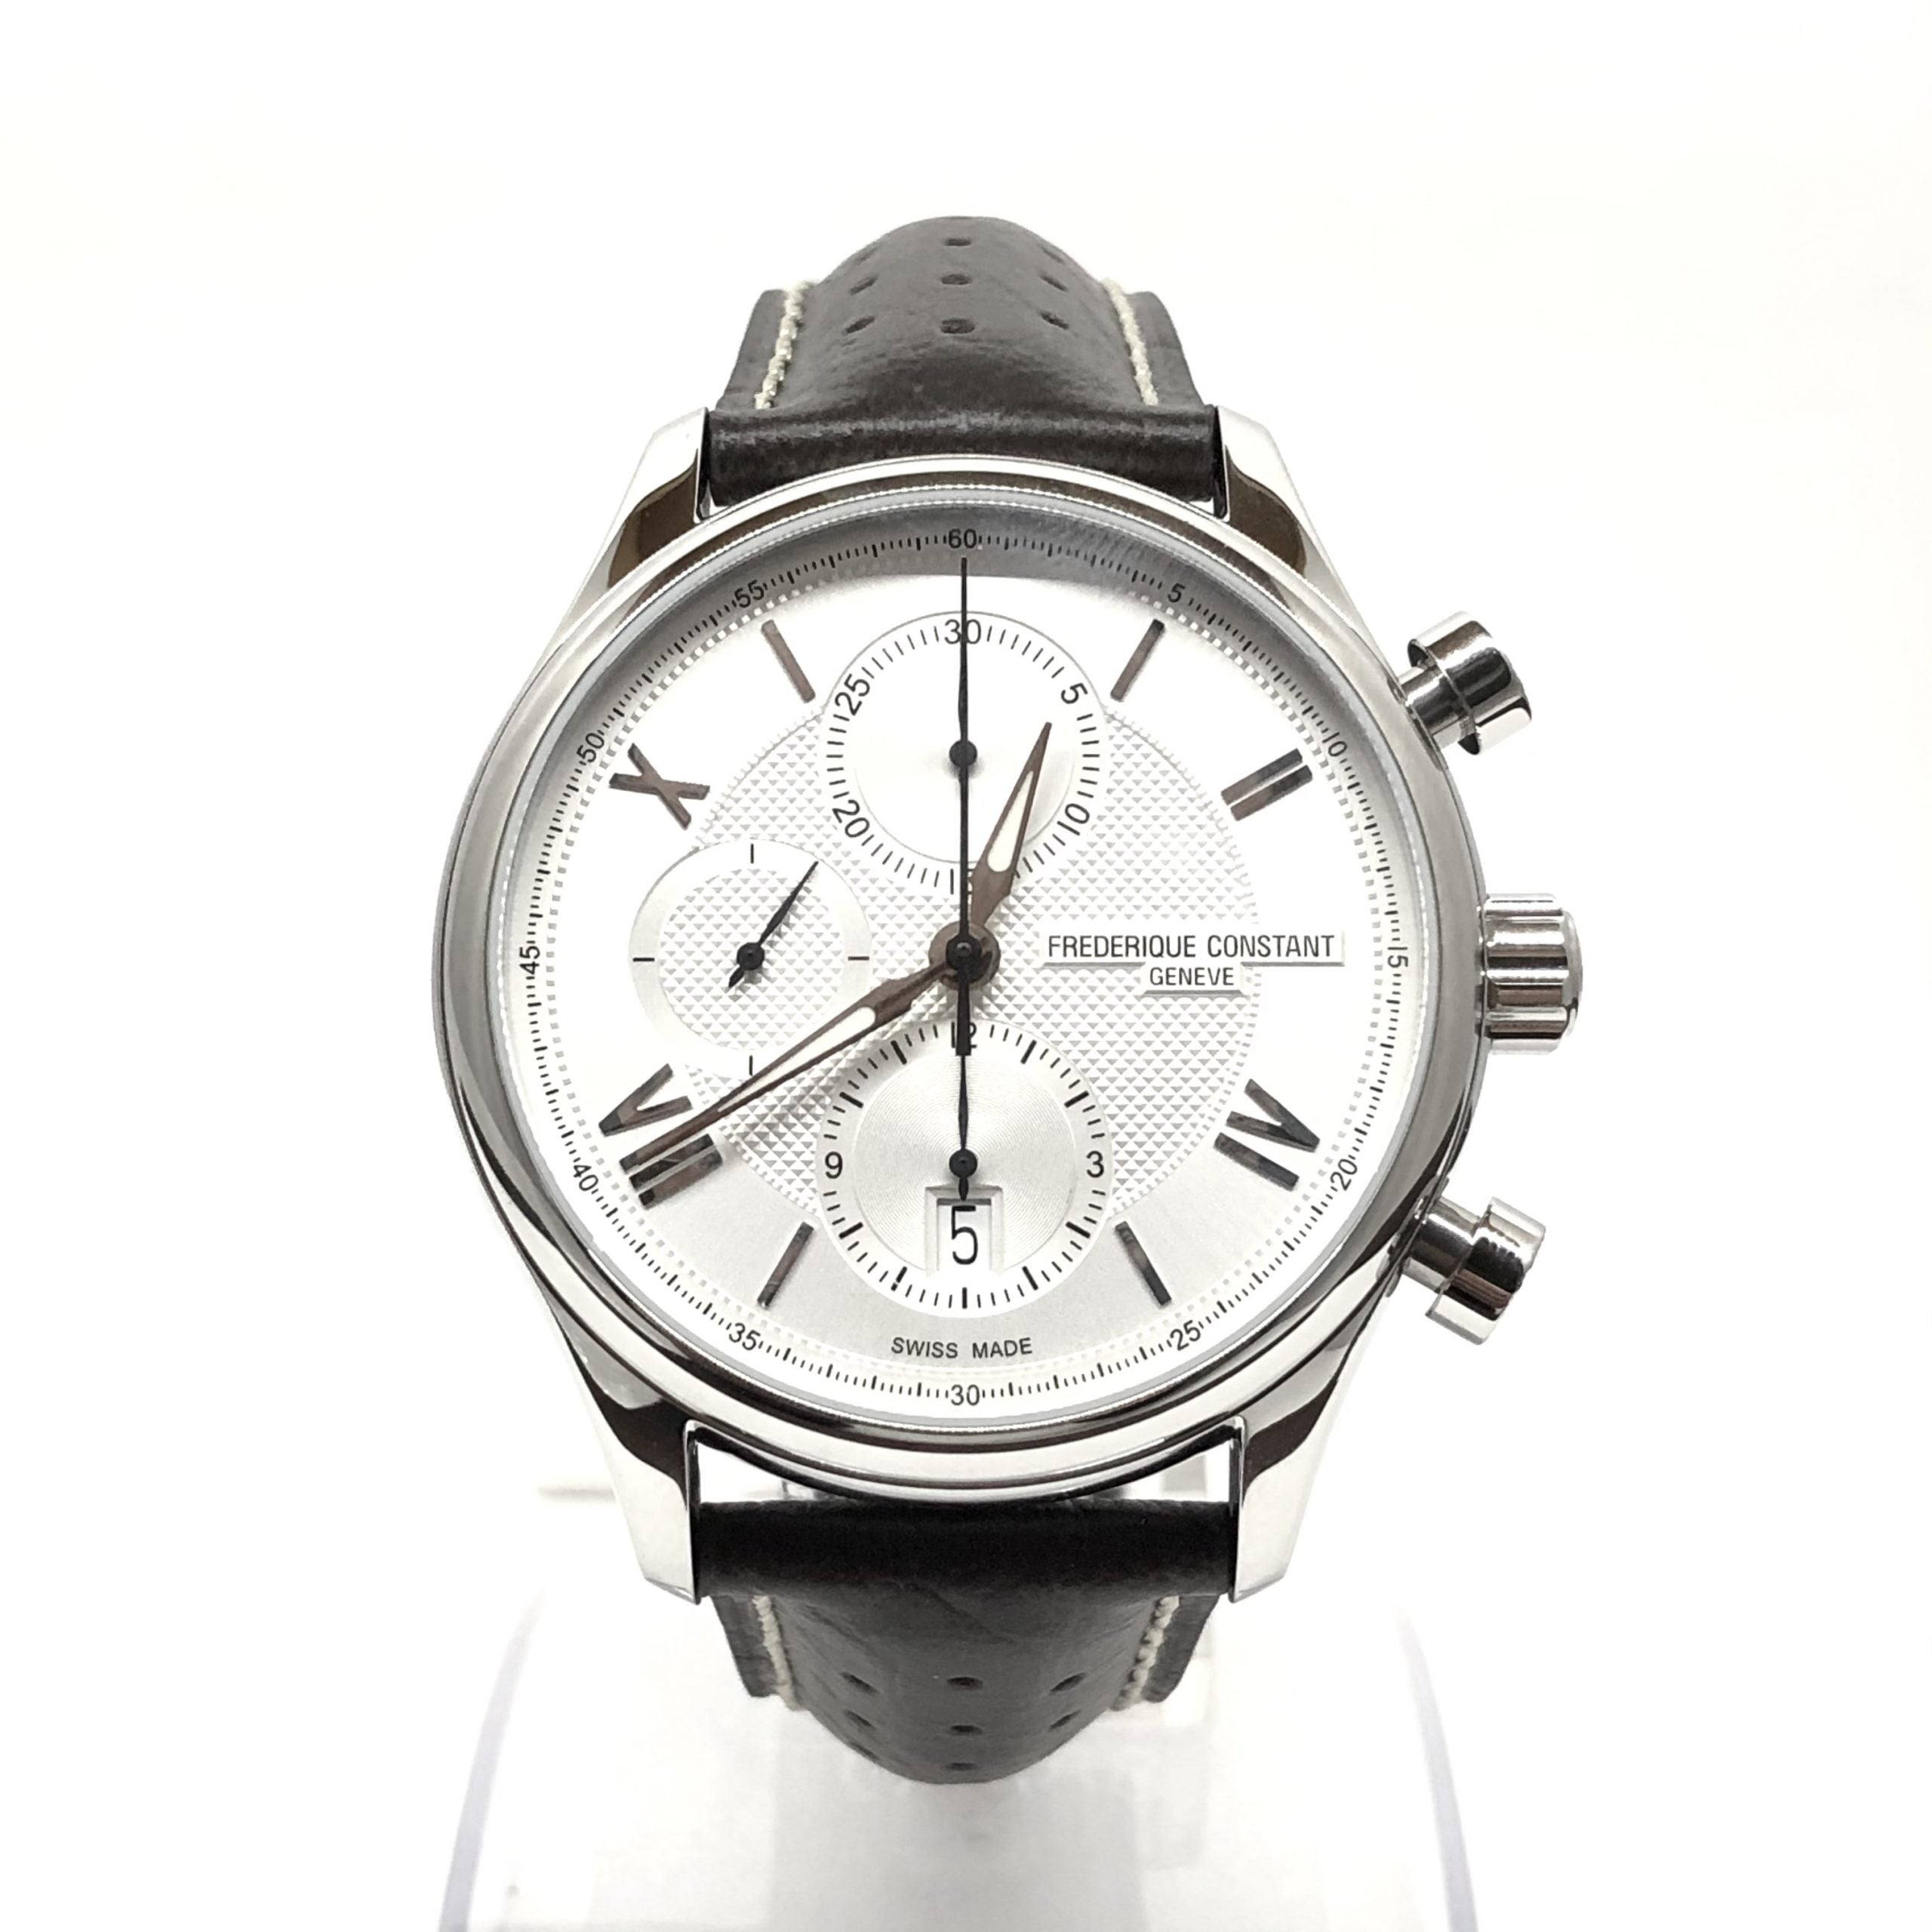 Frederique Constant Chronograph Automatic Men's Watch